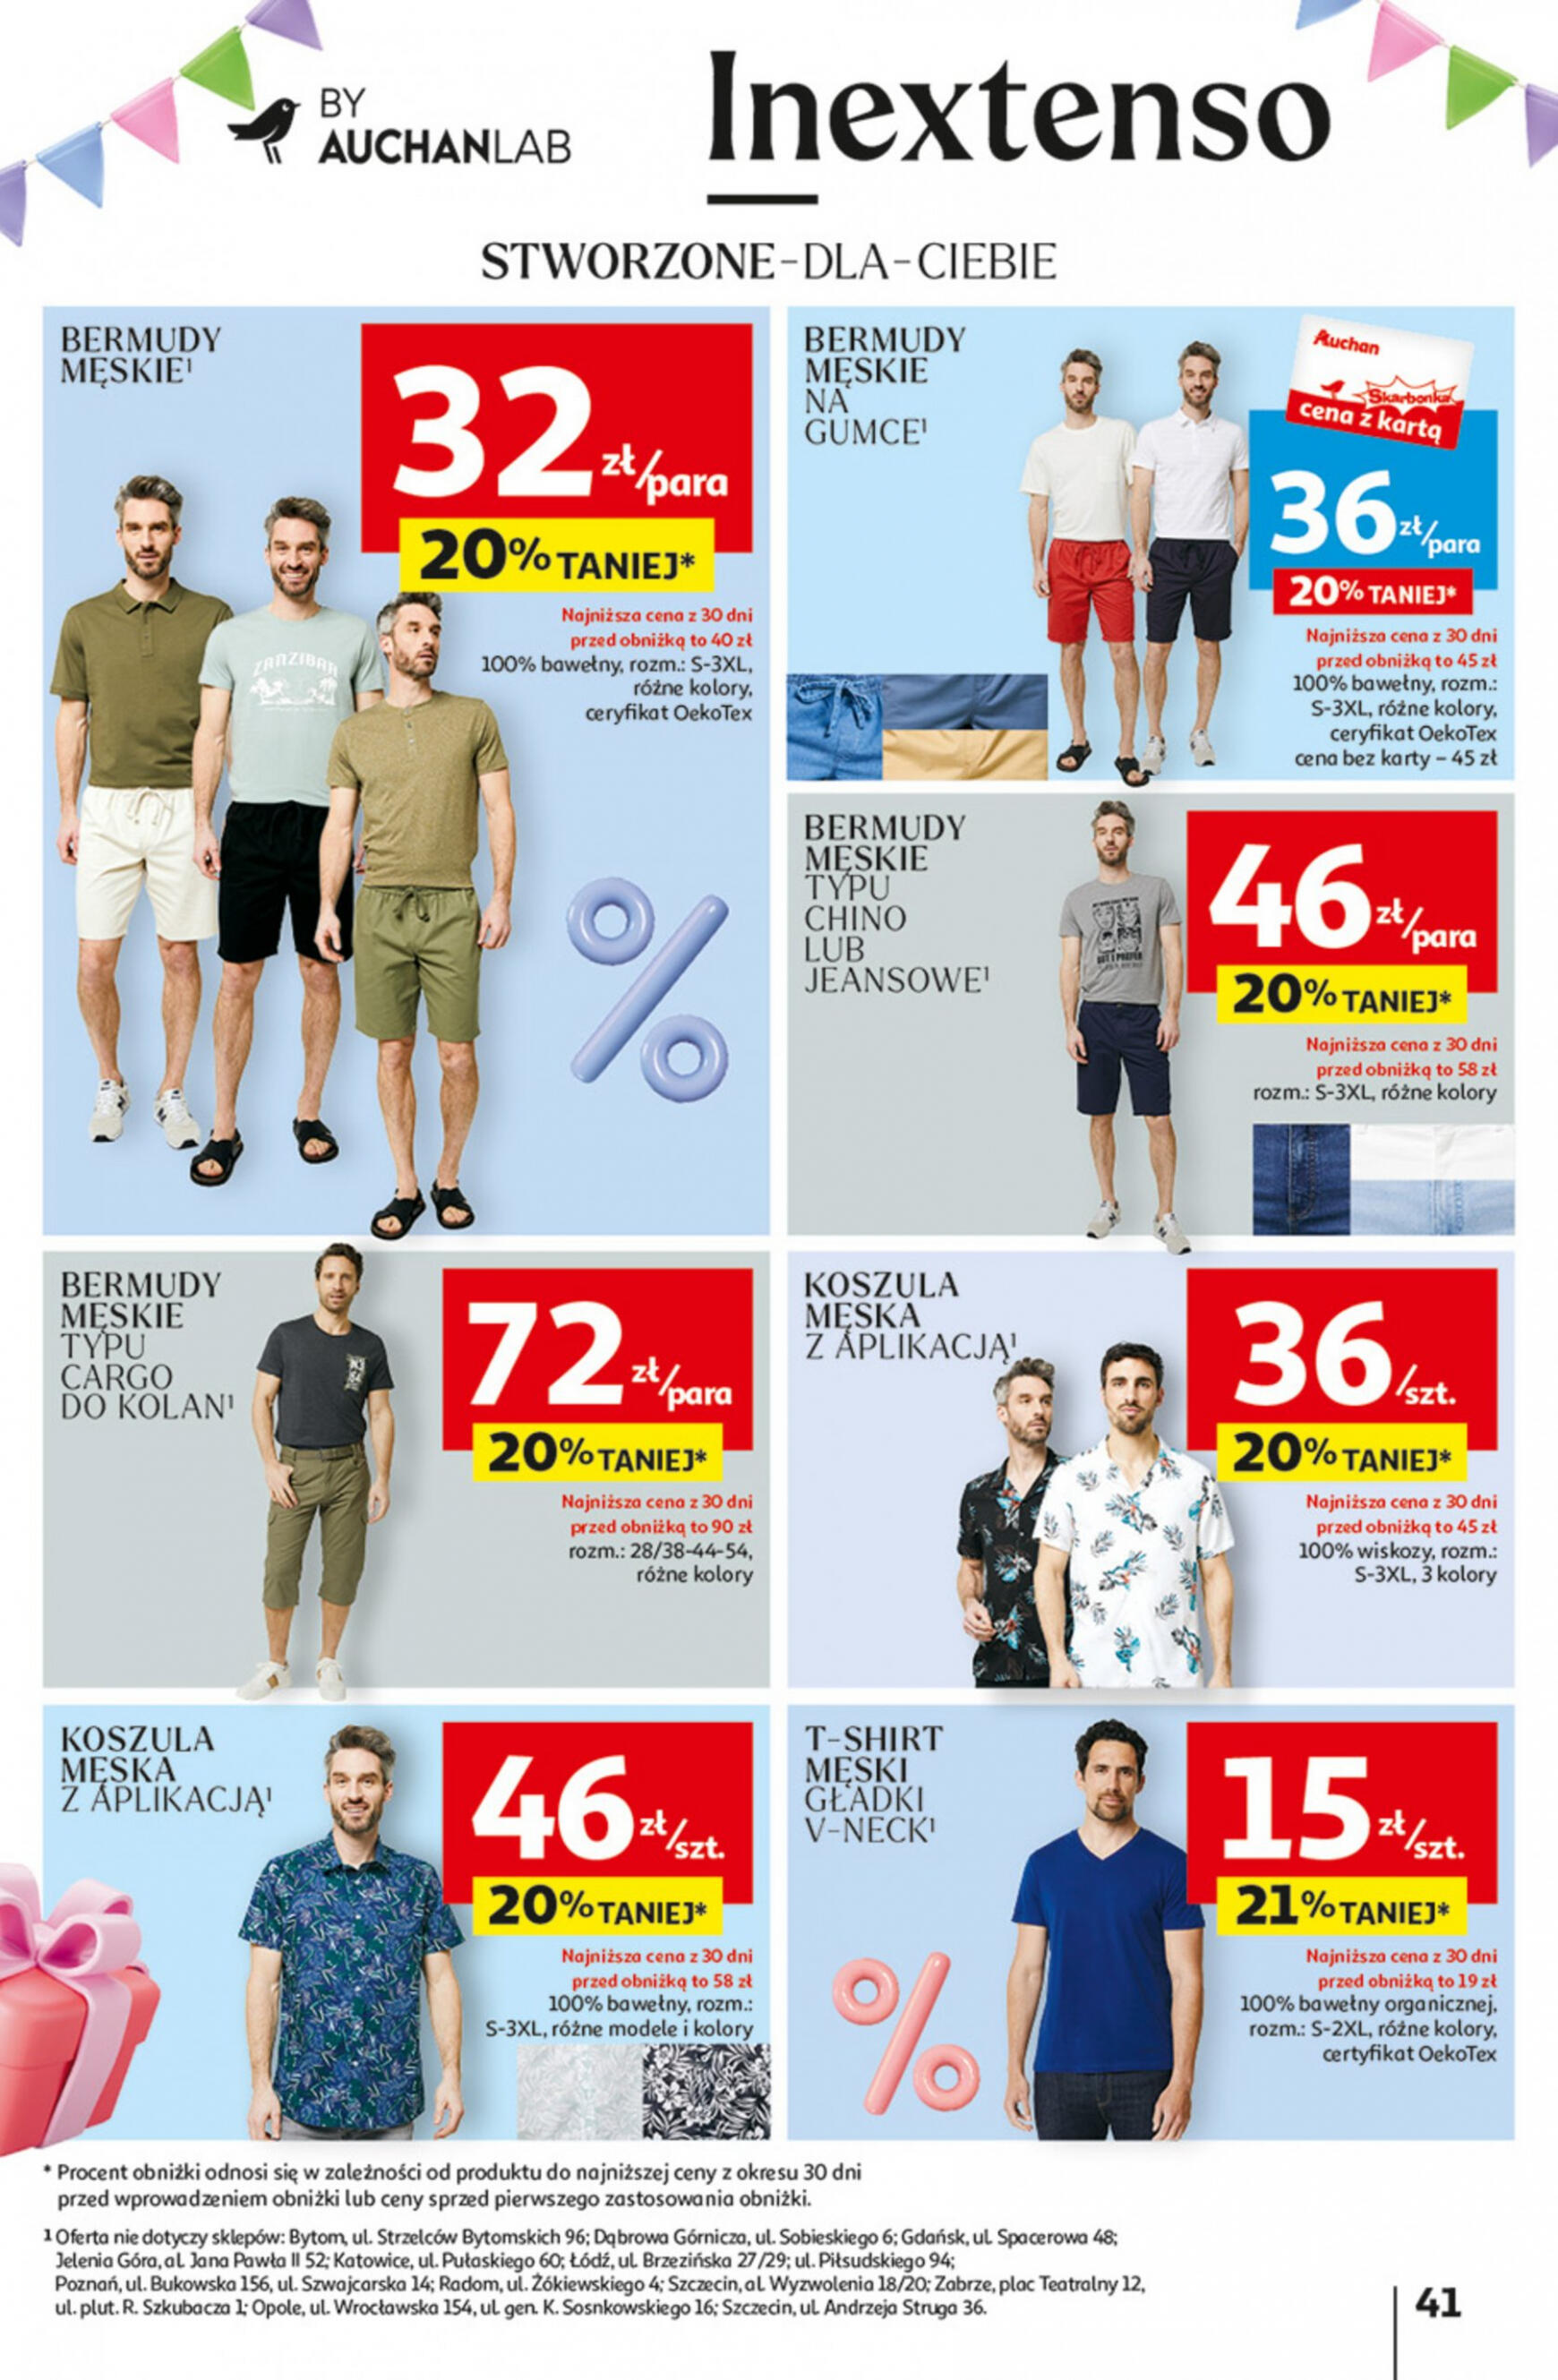 auchan - Hipermarket Auchan - Gazetka Jeszcze taniej na urodziny gazetka aktualna ważna od 09.05. - 15.05. - page: 41